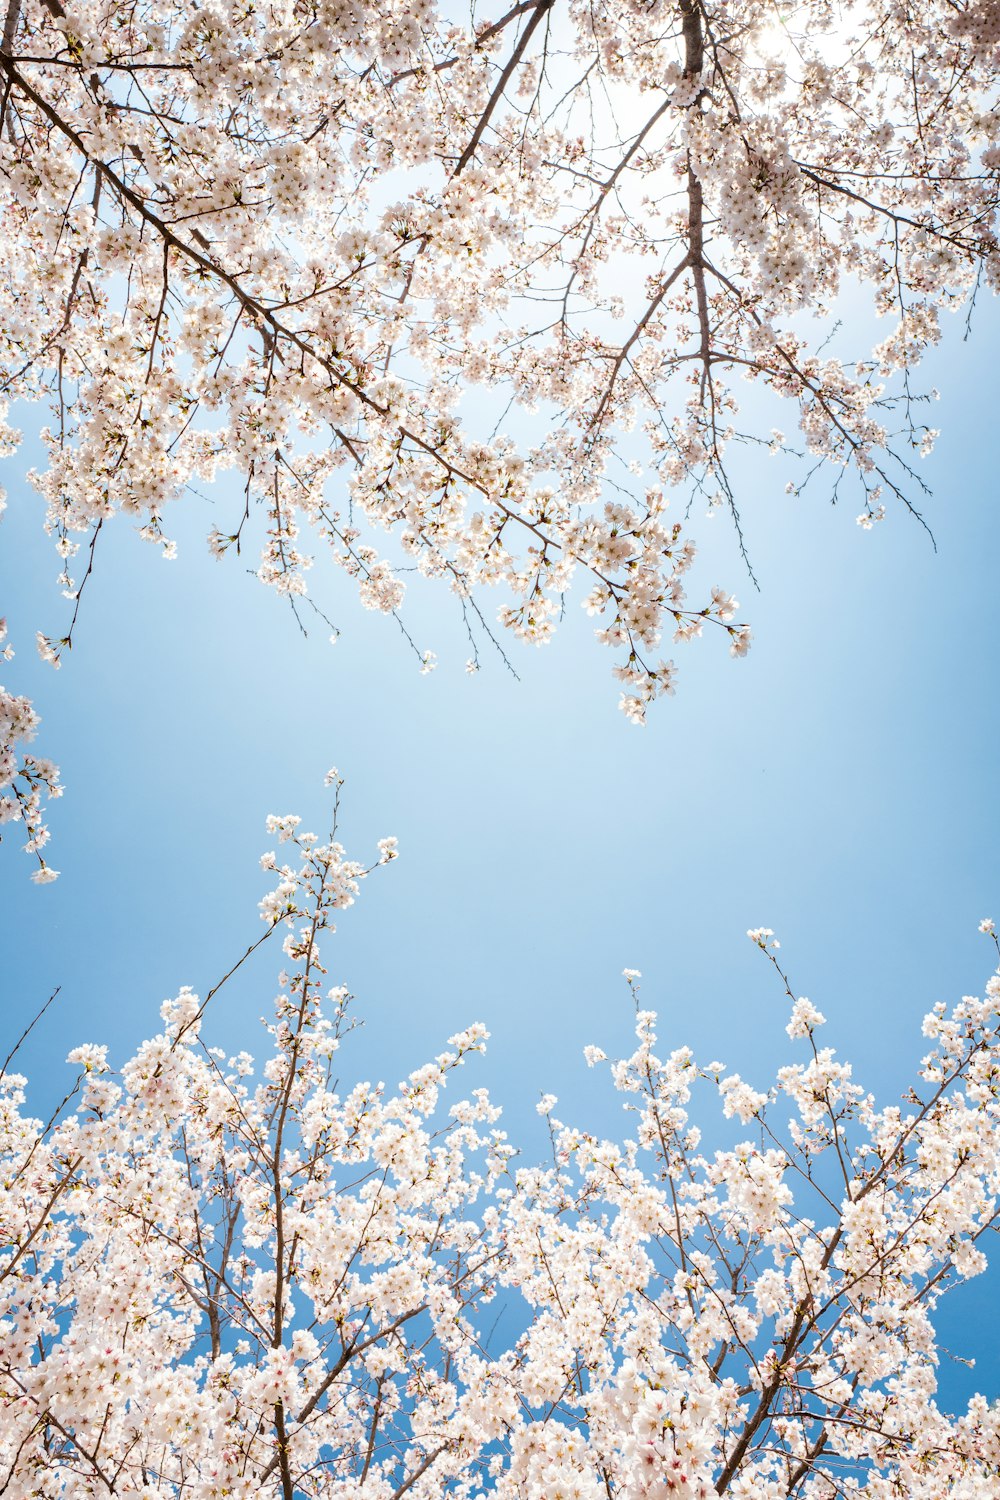 fiore di ciliegio bianco sotto il cielo blu durante il giorno